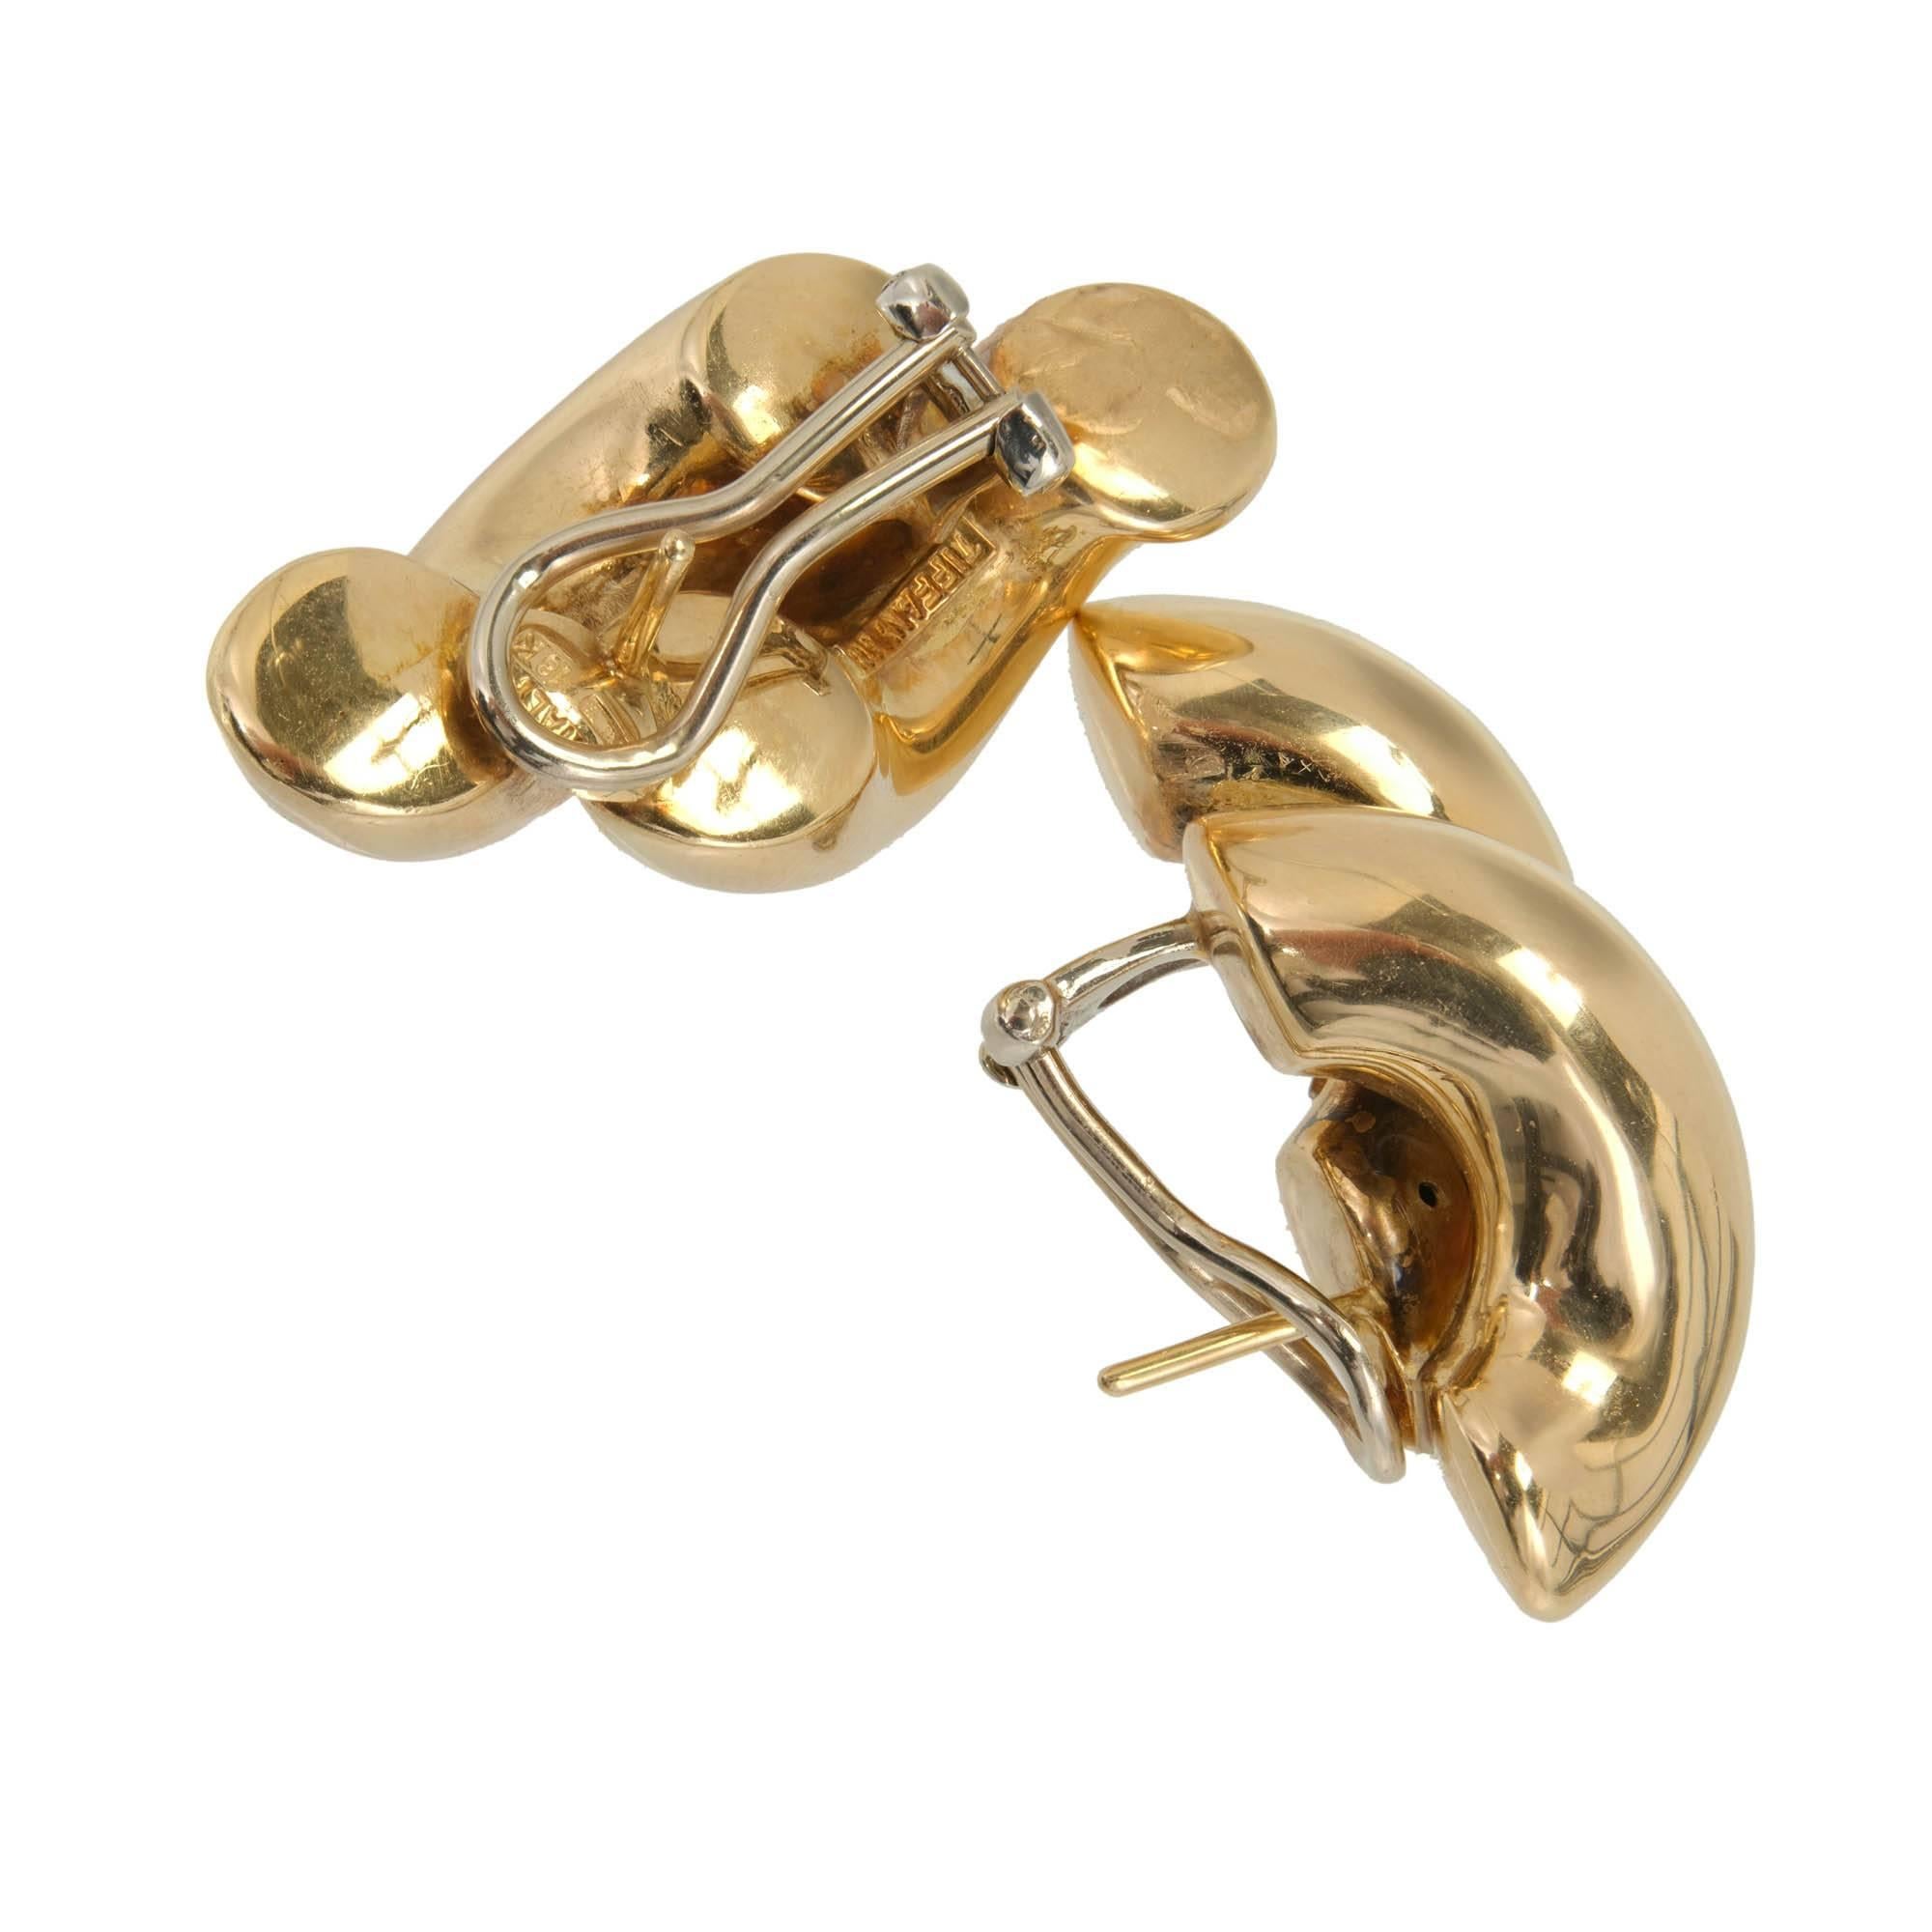 Authentique Tiffany + Co des années 1970 - boucles d'oreilles à clip 3-D à double tourbillon. Réalisée en or jaune 18 carats, chaque boucle d'oreille présente un gracieux maillon à double tourbillon, dégageant une impression de fluidité et de